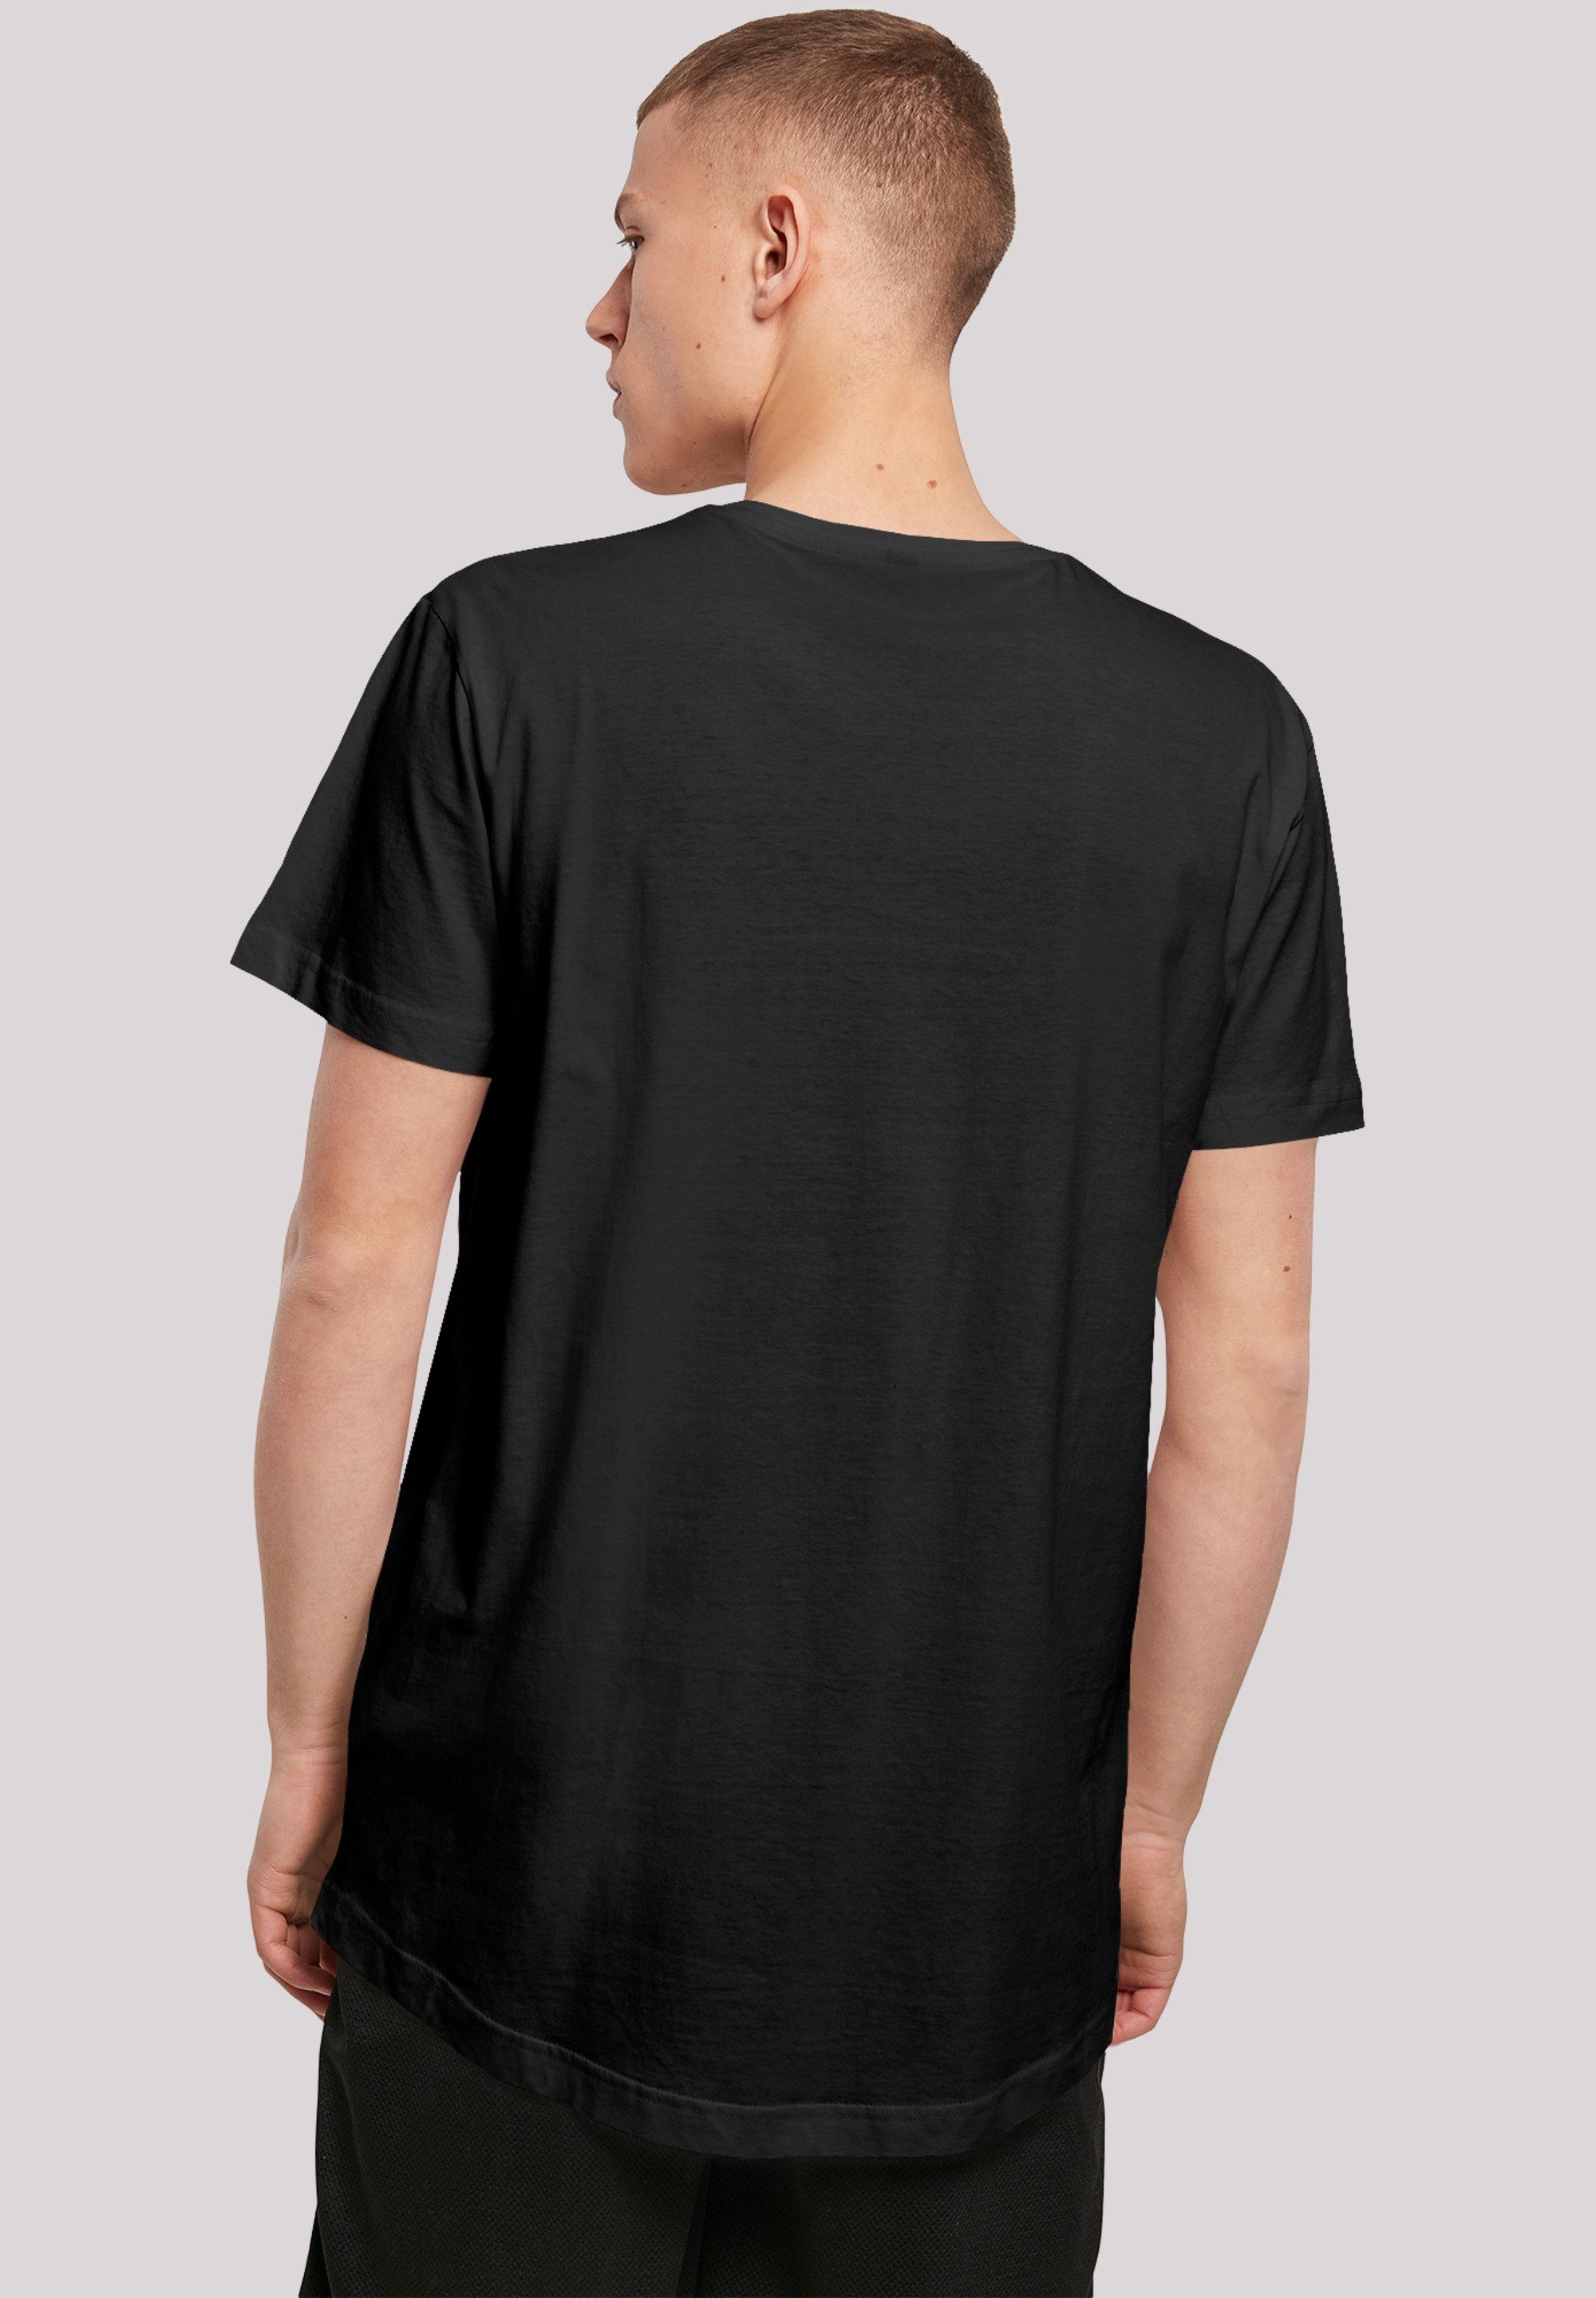 F4NT4STIC T-Shirt F4NT4STIC Long Merch,Lang,Longshirt,Bedruckt T-Shirt Herren,Premium Cut